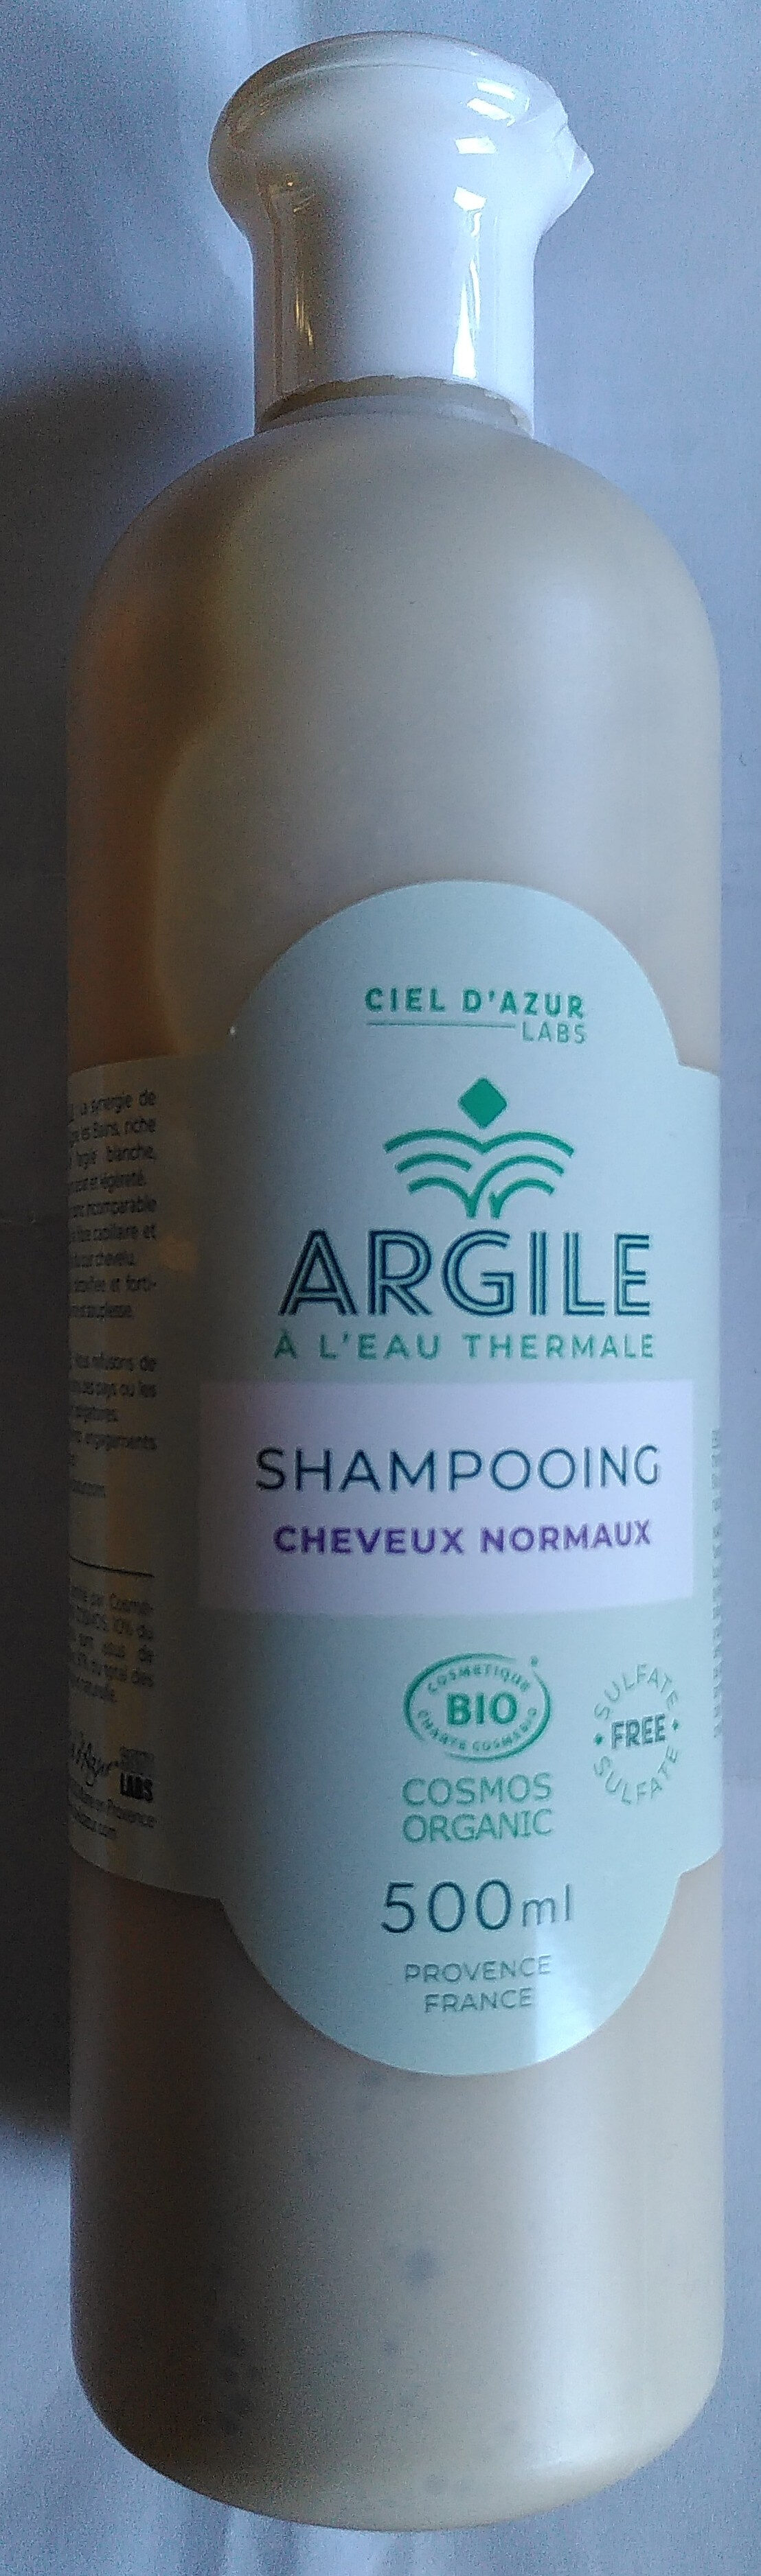 Shampooing cheveux normaux argile à l'eau thermale - Product - fr